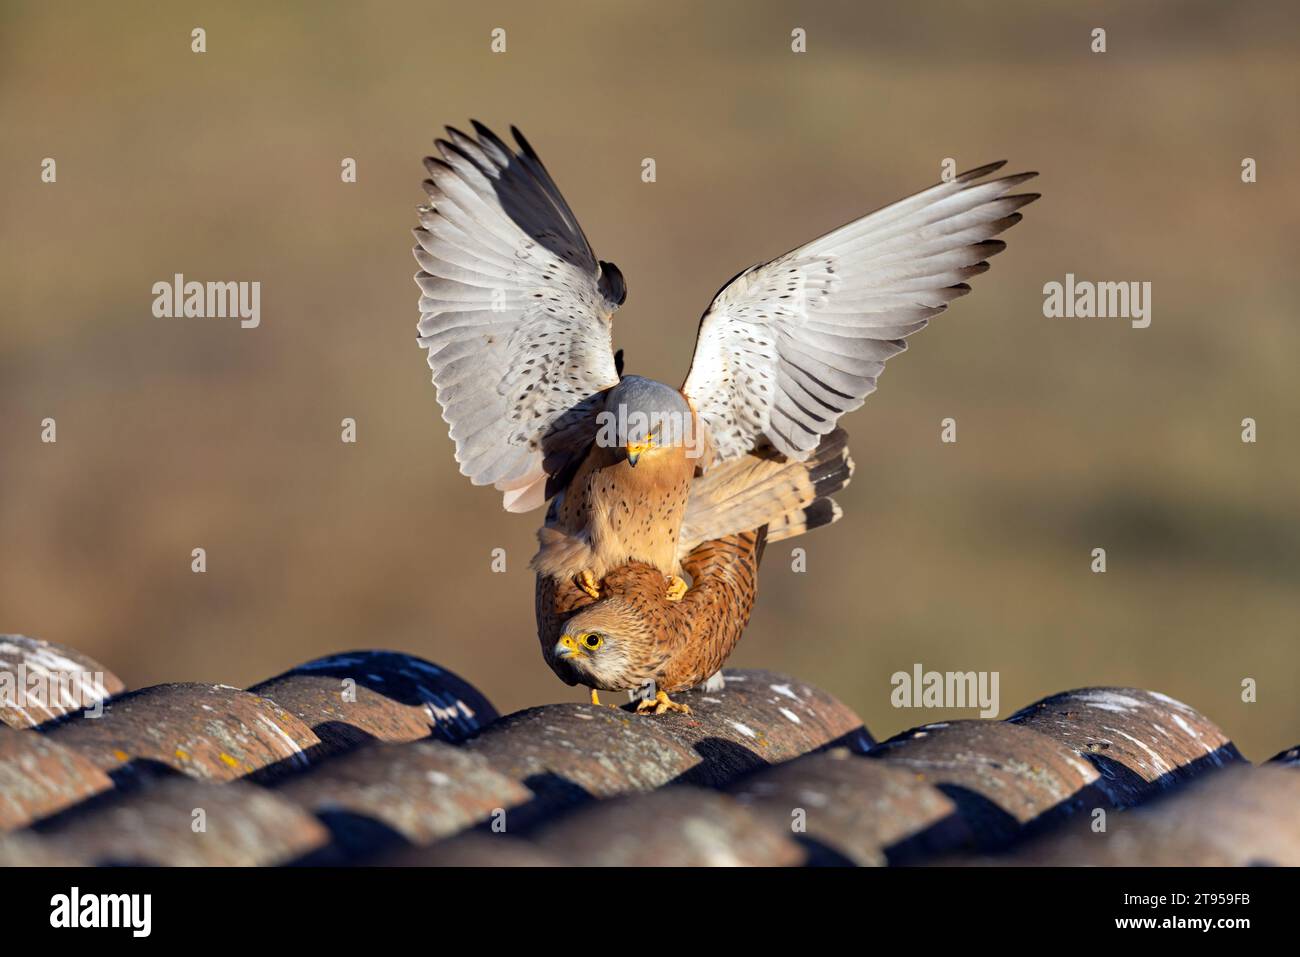 Estrellete menor (Falco naumanni), apareamiento en el roff de una finca, vista frontal, España, Extremadura, Salorino Foto de stock